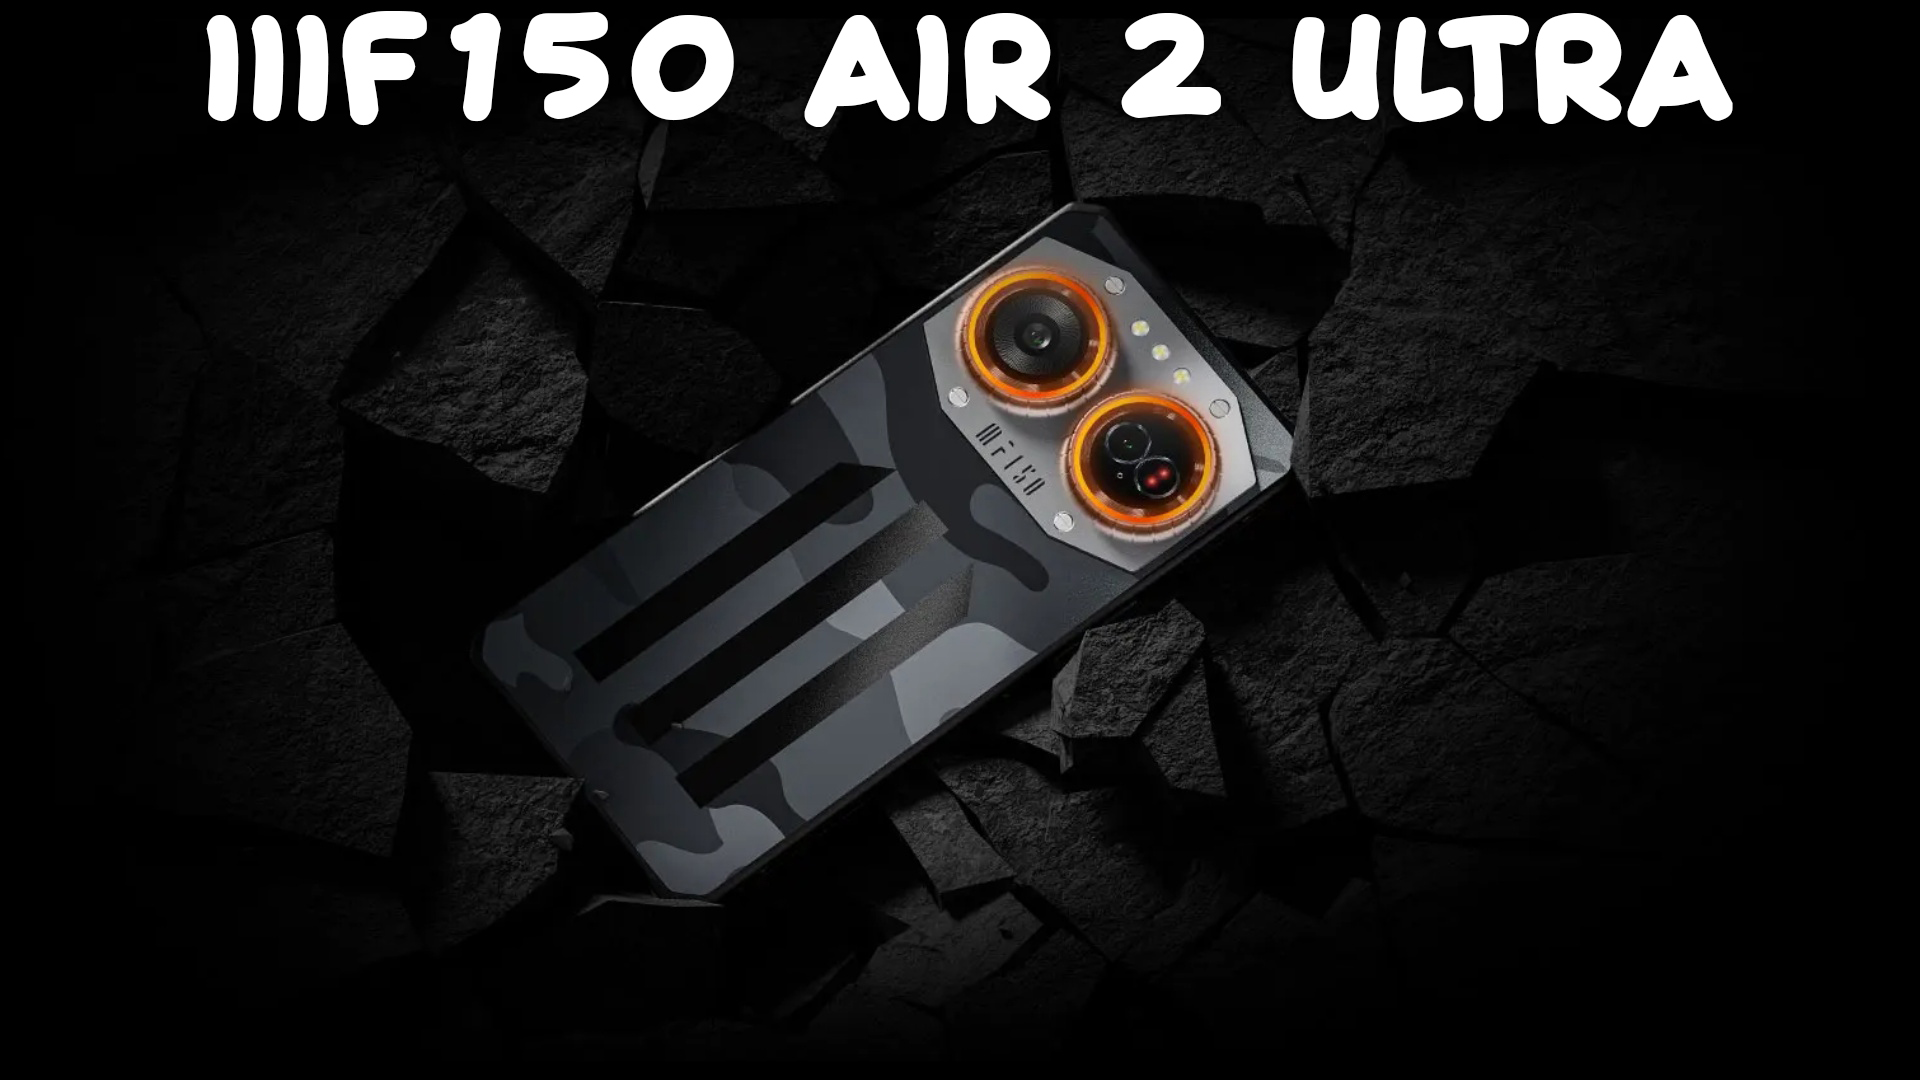 IIIF150 Air 2 Ultra первый обзор на русском